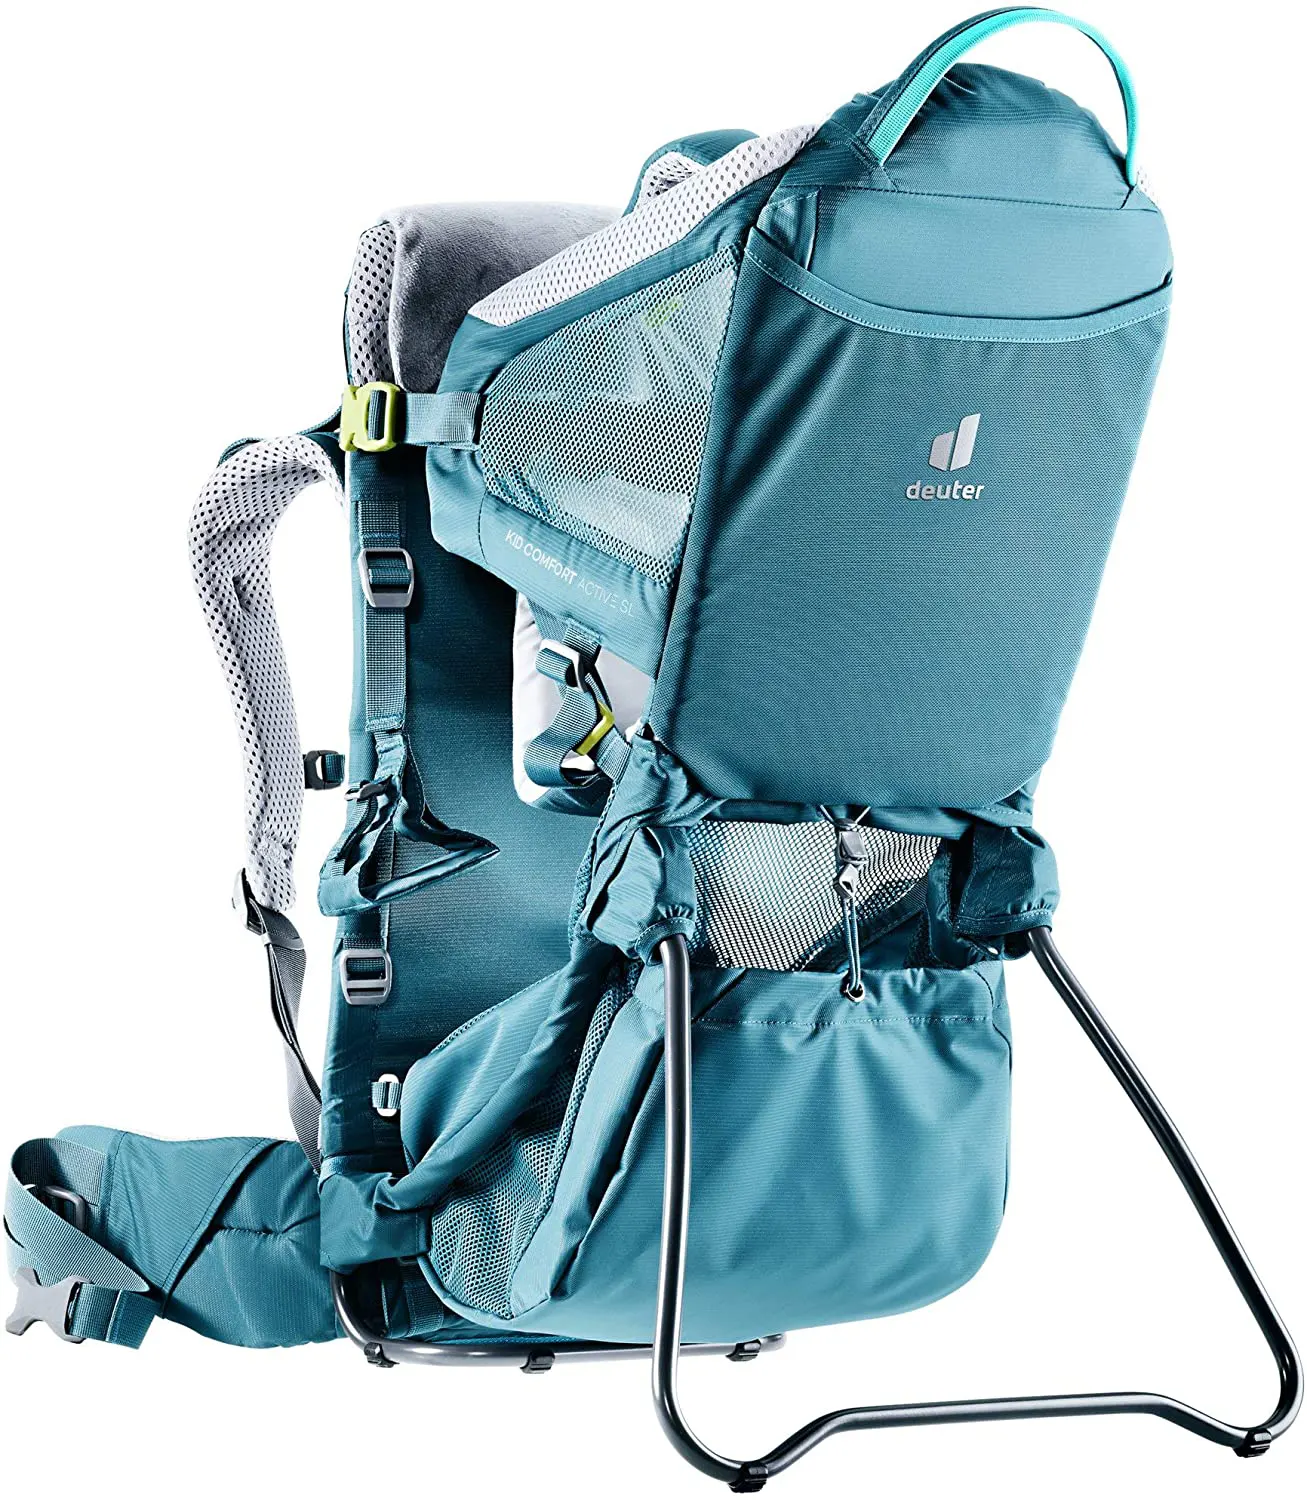 Mochila de bebé de alta calidad para senderismo, mochila portabebés para  niños pequeños, mochila ergonómica para senderismo